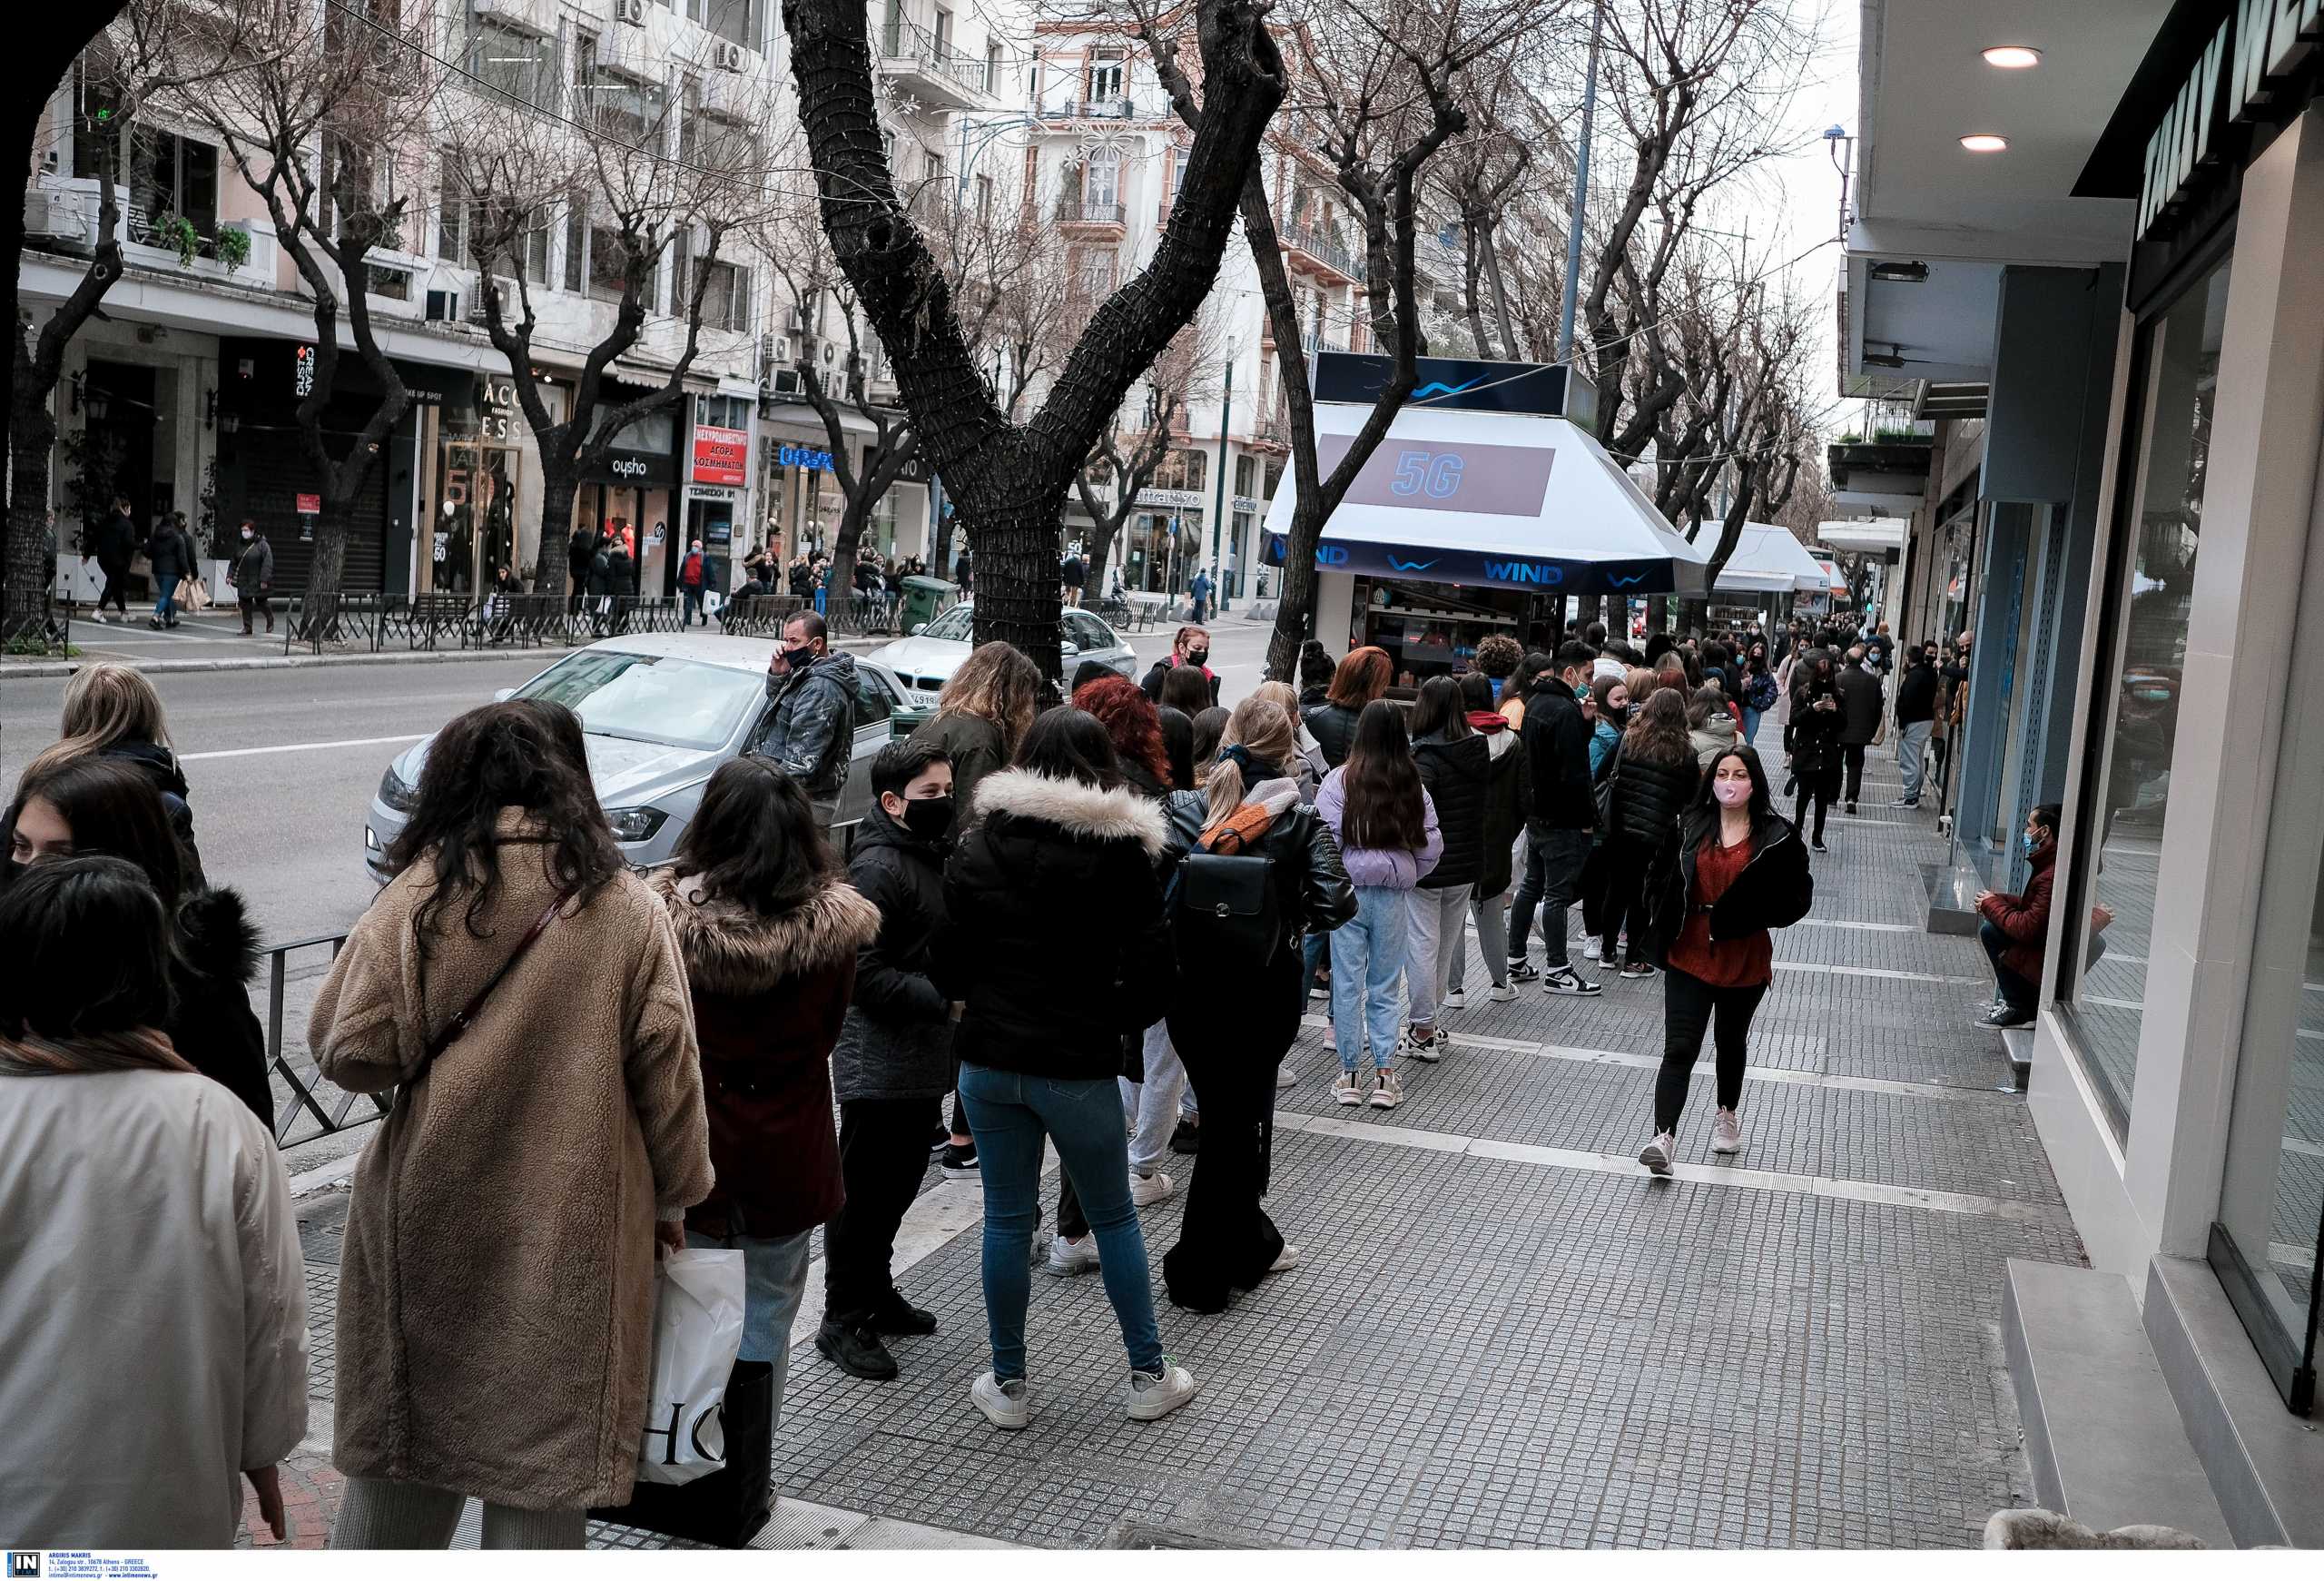 Θεσσαλονίκη: Σε οριακή κατάσταση, μια ανάσα από το lockdown